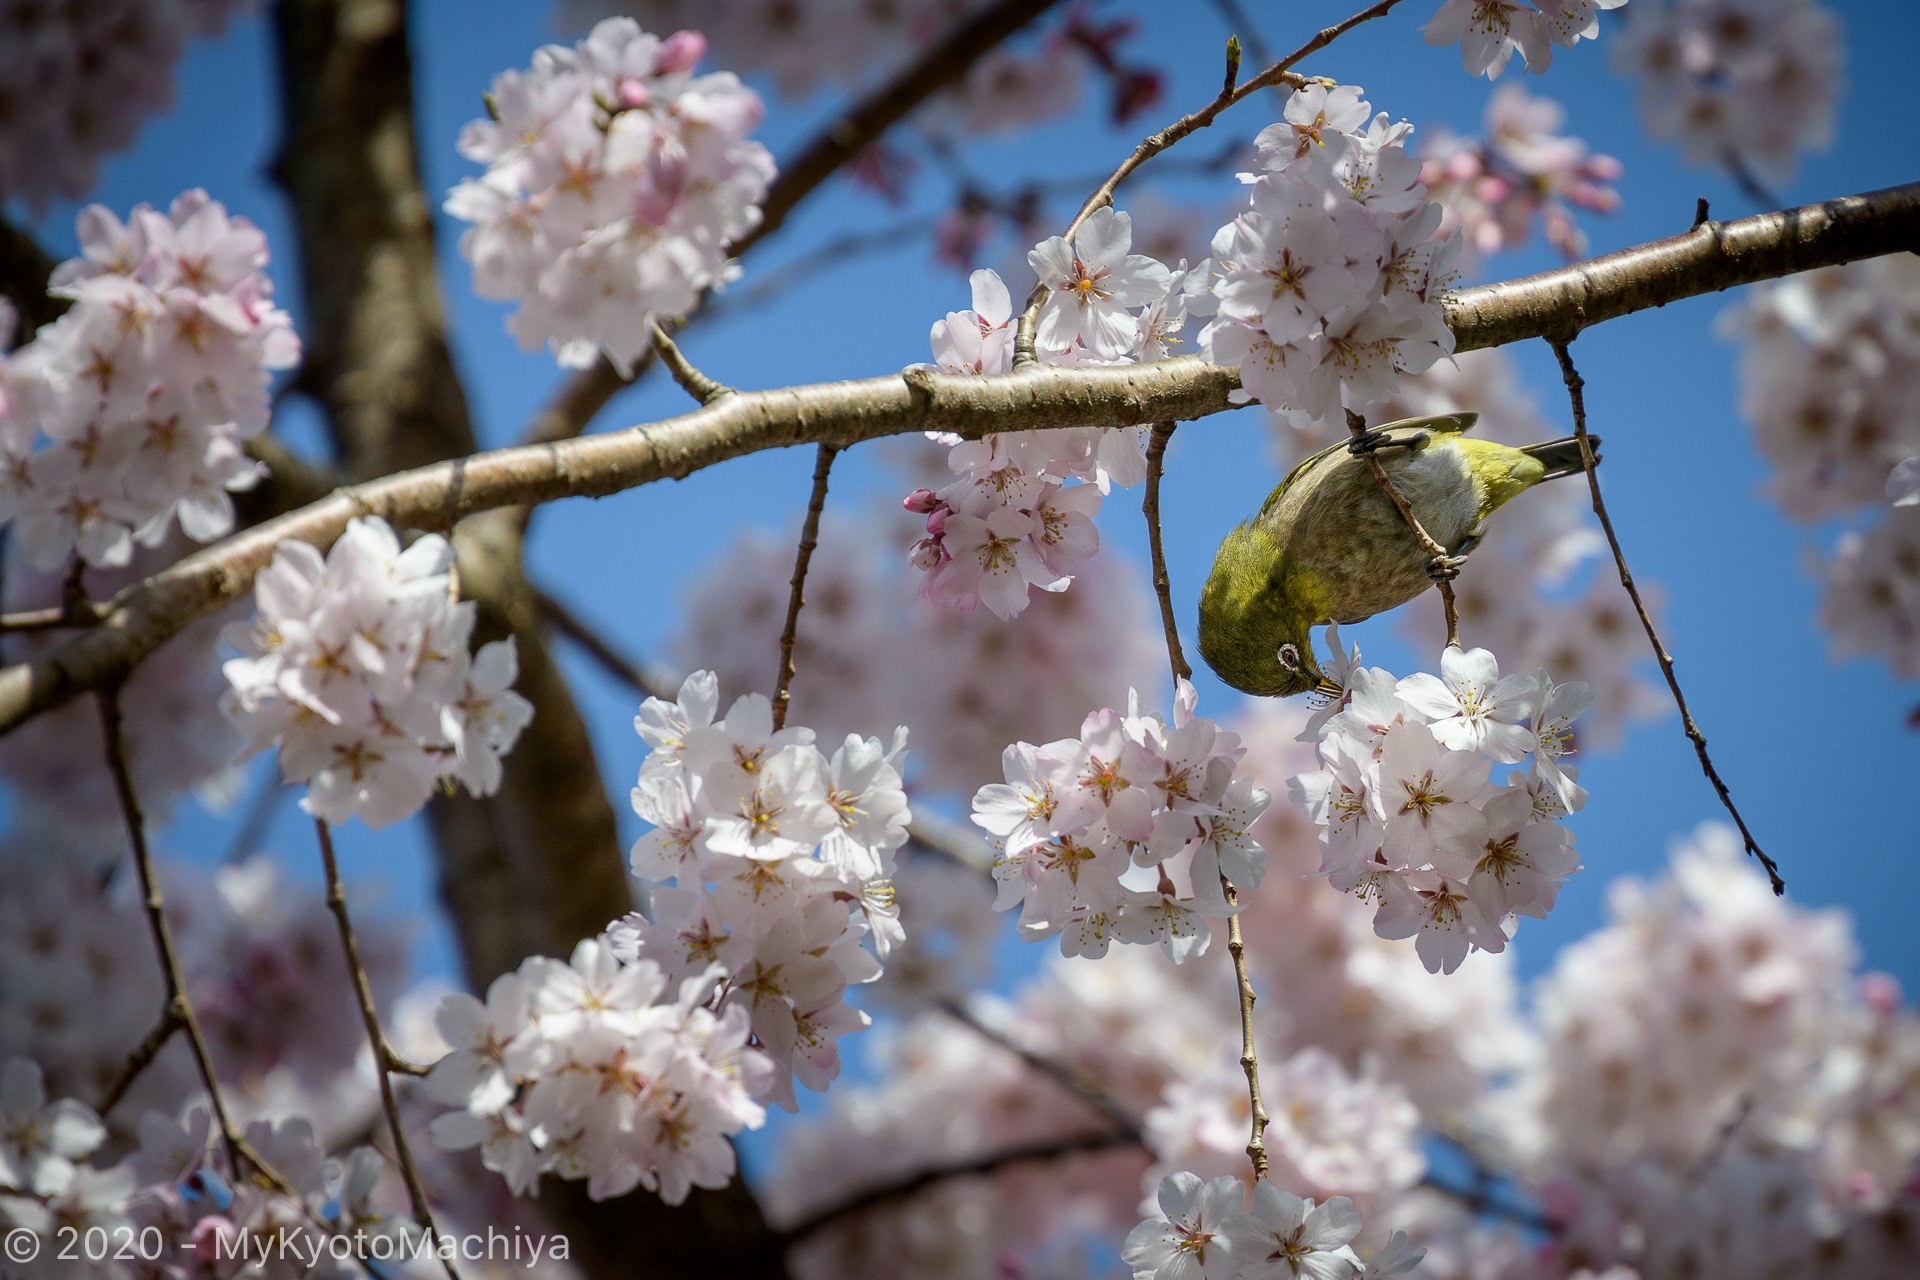 Mejiro bird, (Warbling White Eye) among cherry blossoms around t